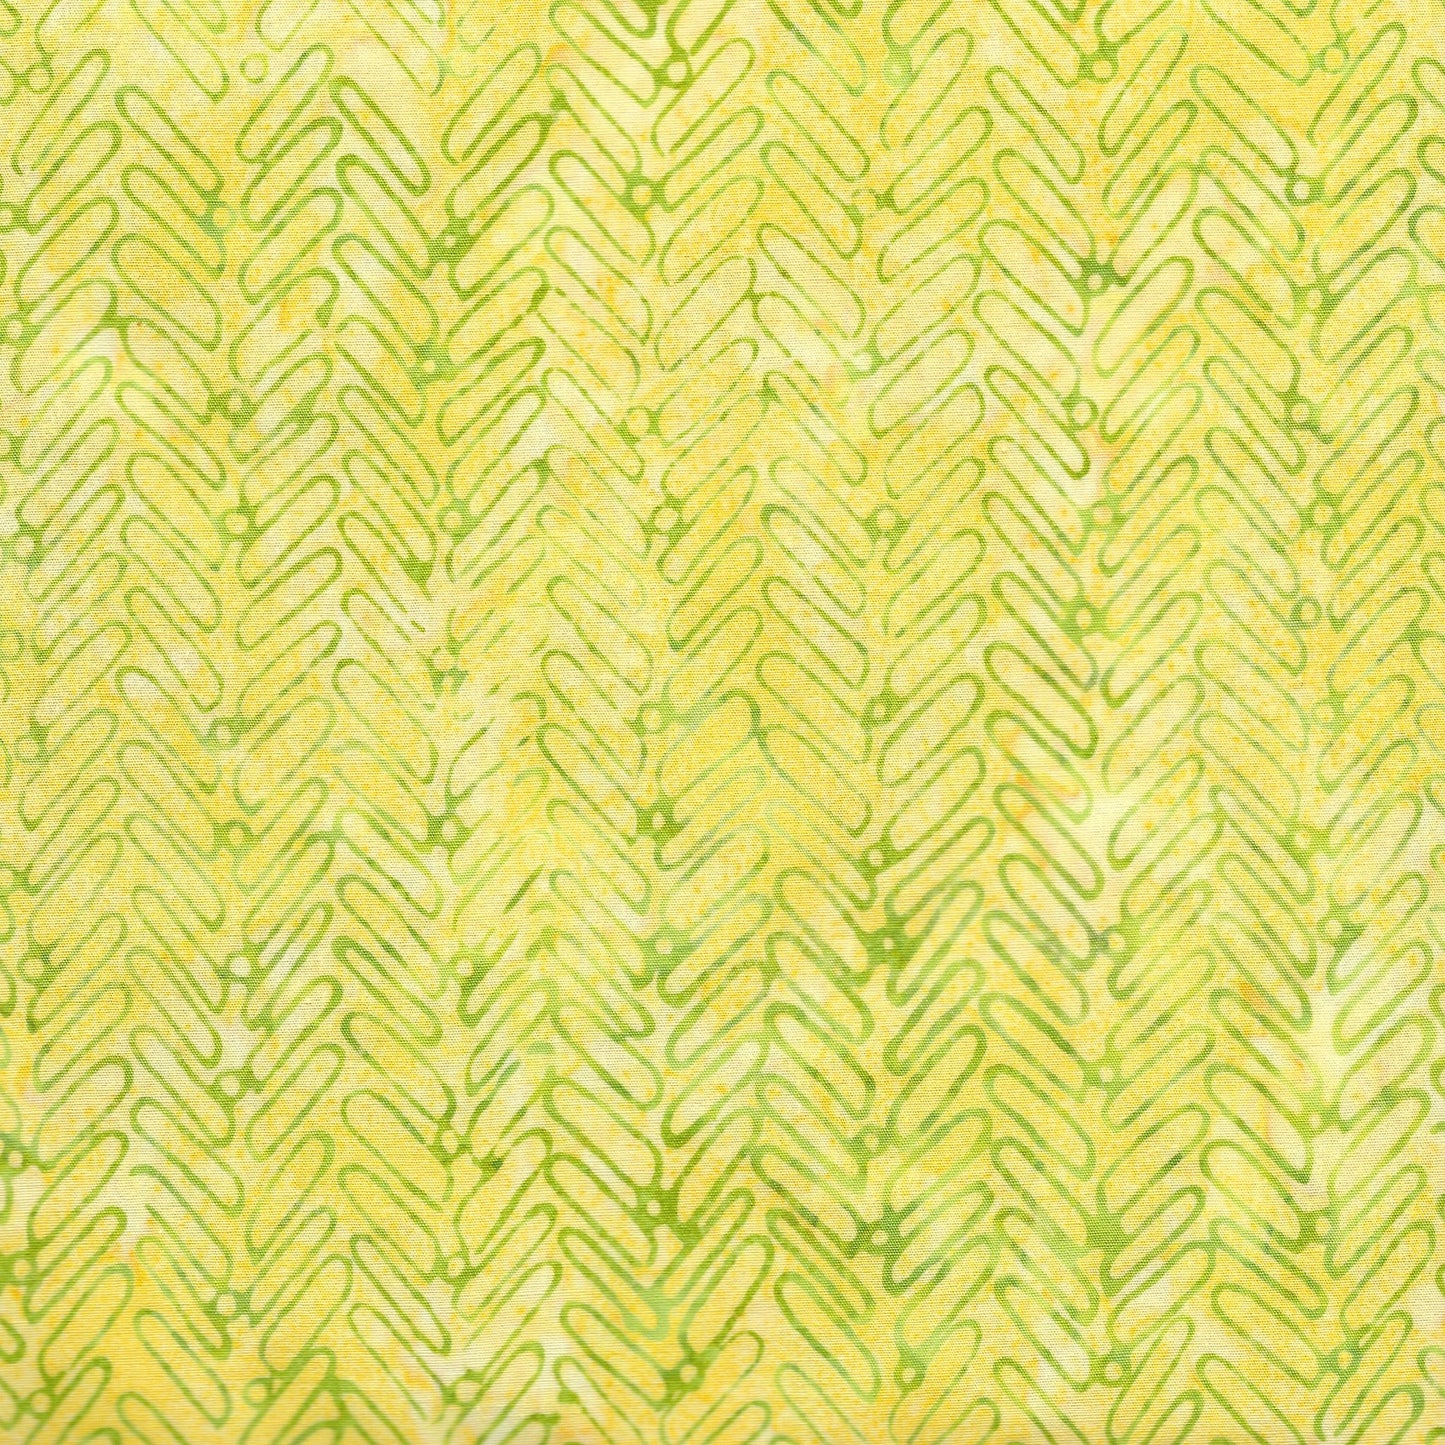 Herringbone- lemon-Peacock Galore By ISLAND BATIK - 512002612